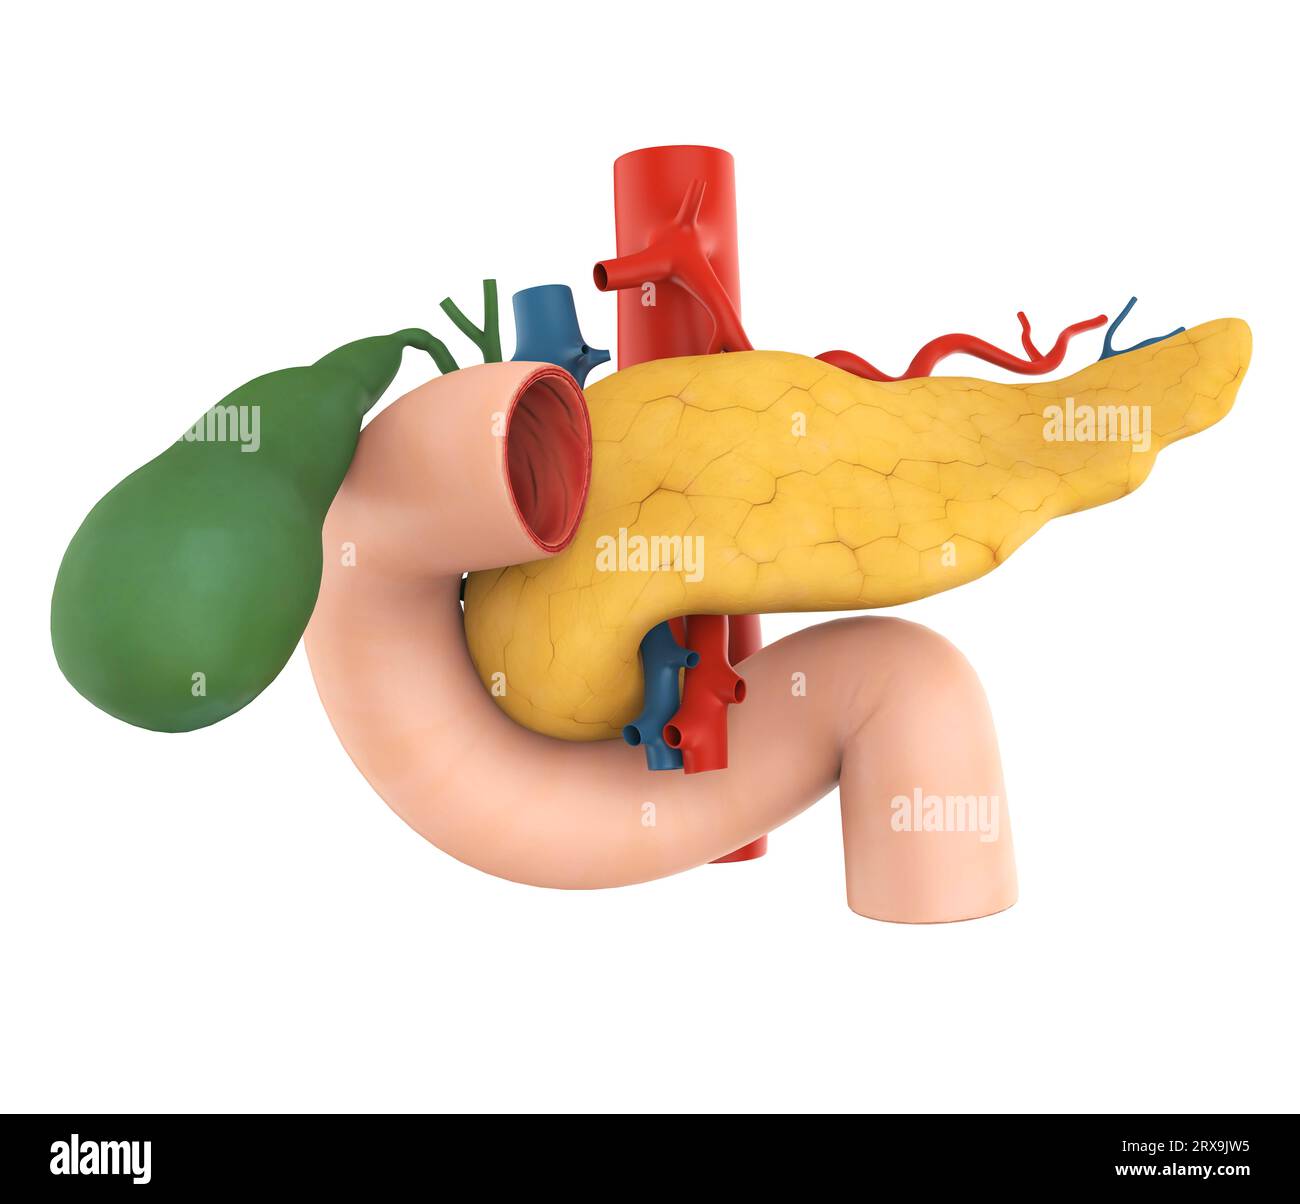 Anatomie du pancréas, de la vésicule biliaire et du duodénum Banque D'Images